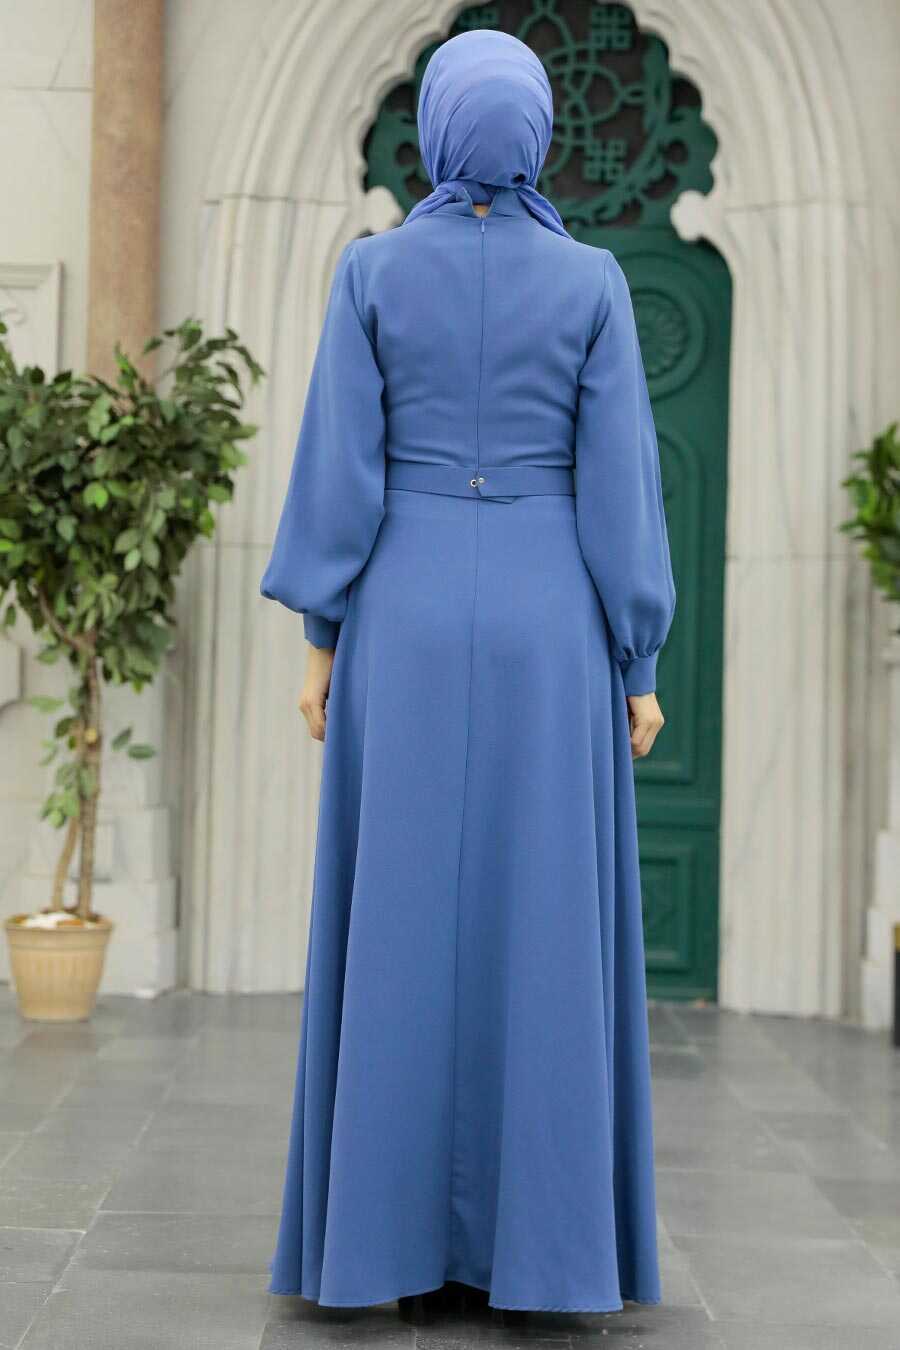 Neva Style - İndigo Blue Islamic Clothing Dress 3425IM